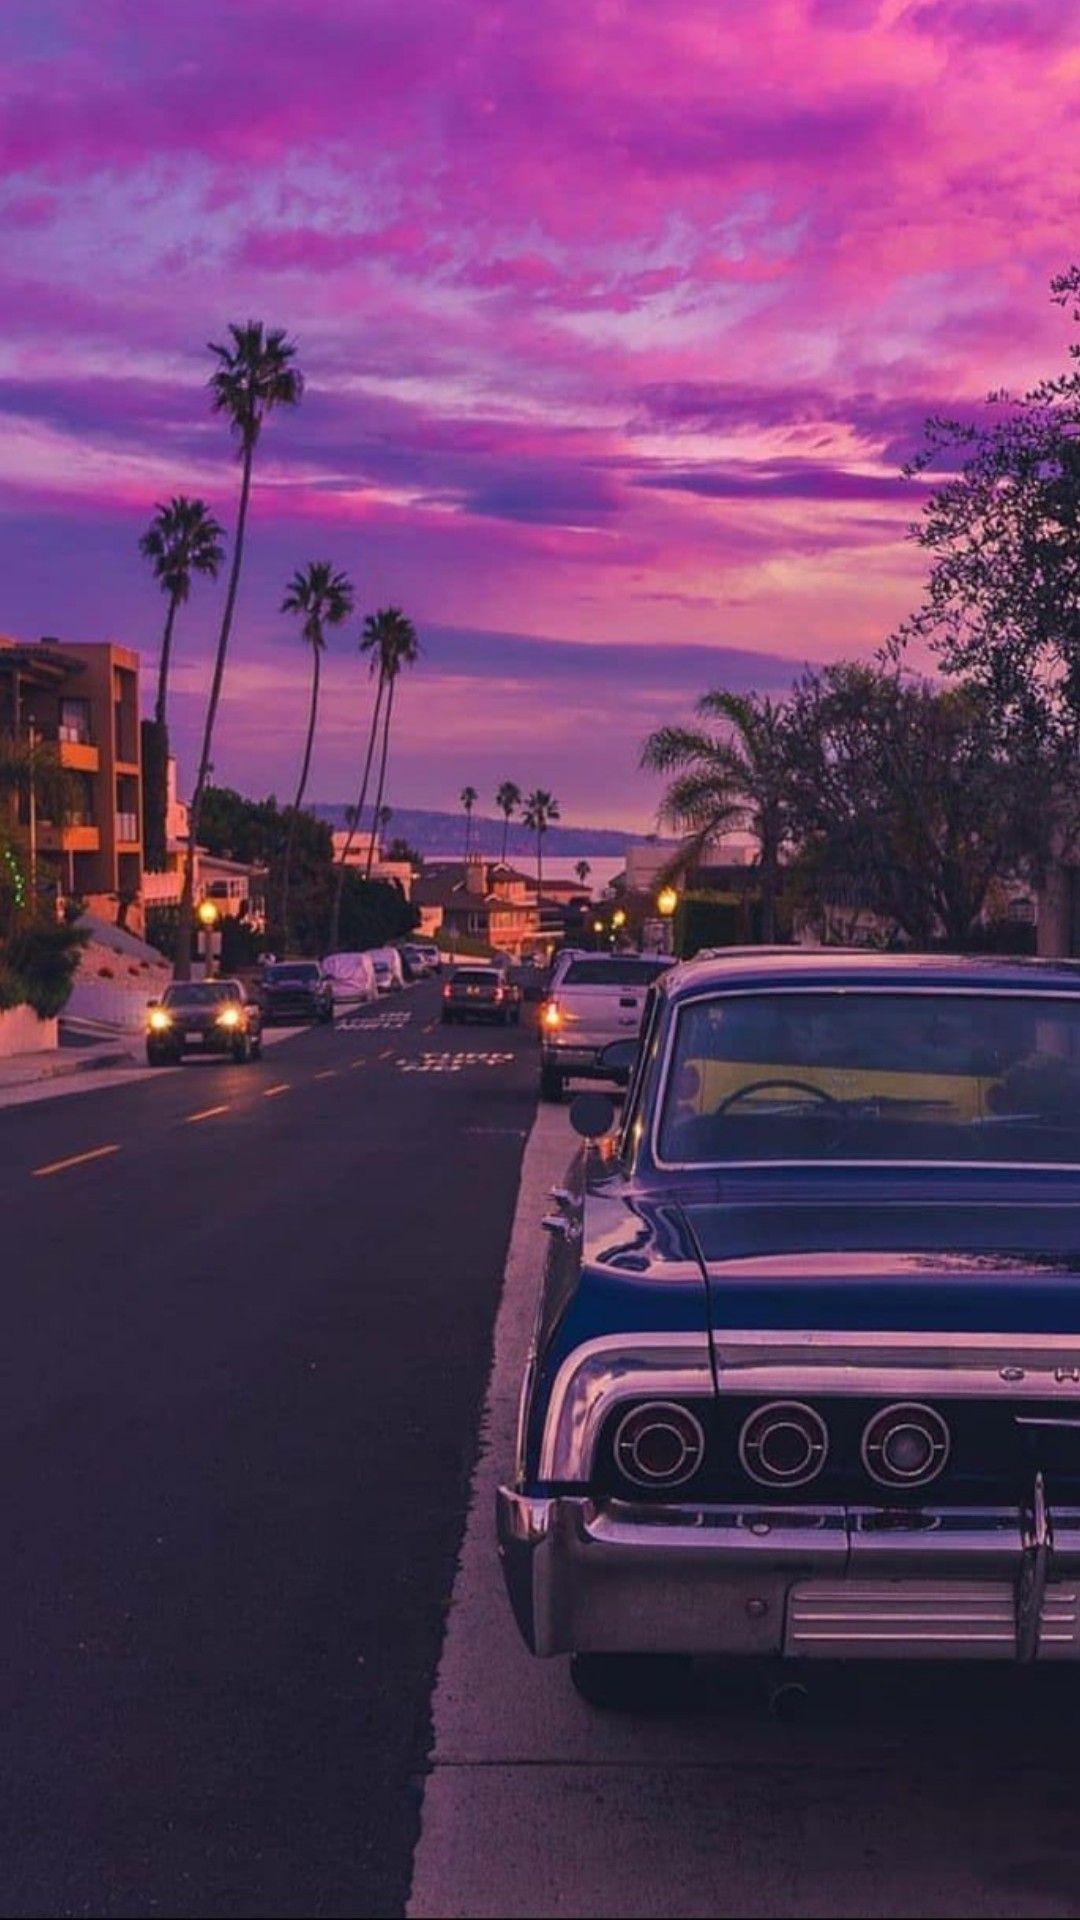 1080x1920 chevrolet #car #wallpaper #city #photo #camera # hình nền thẩm mỹ iphone màu tím pastel #car #Chevrolet #Wa.  Hình nền xe hơi, Hình nền Mustang, Hình nền máy ảnh